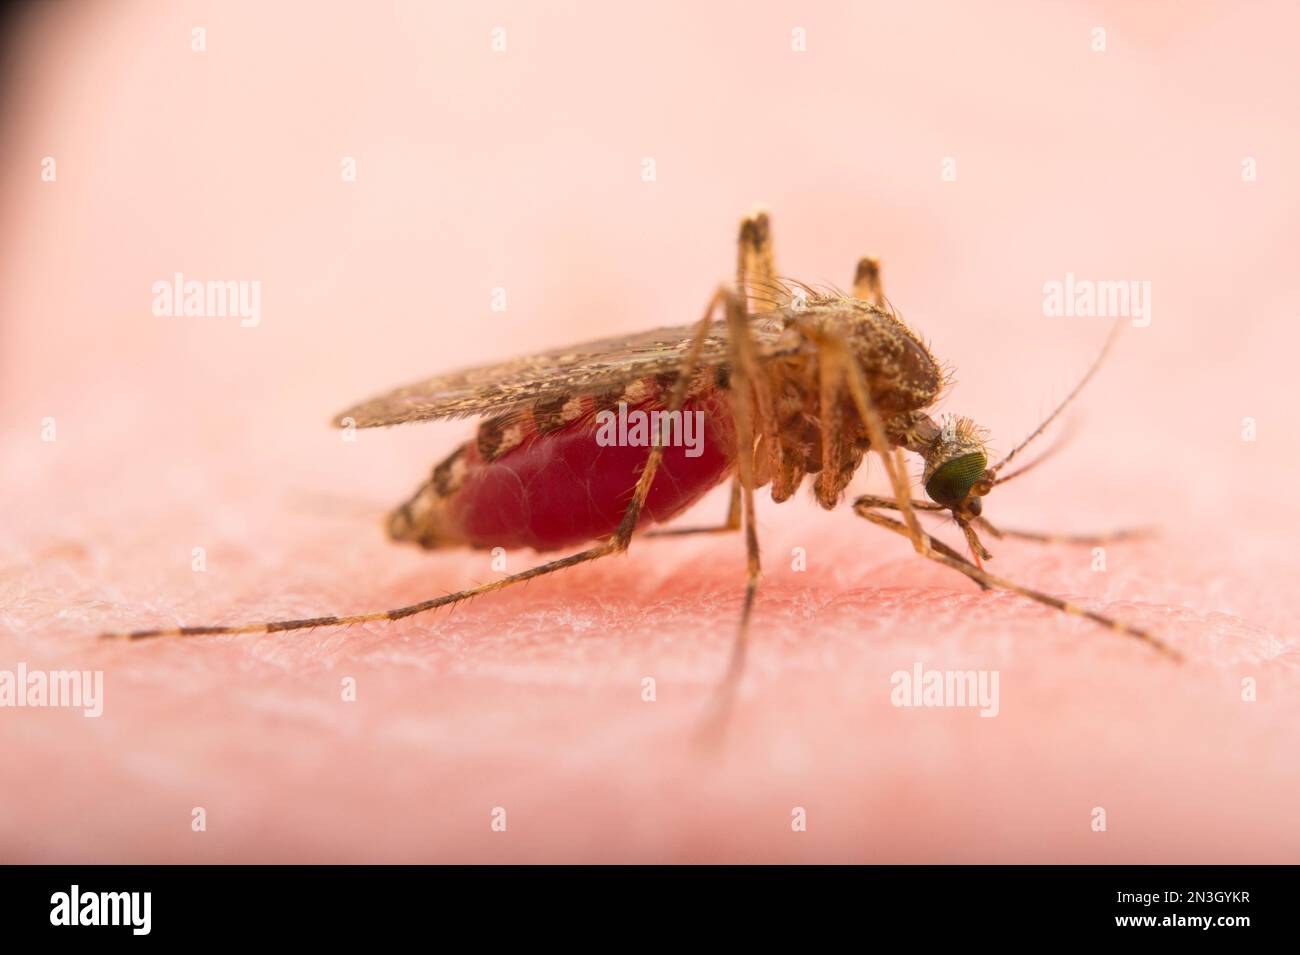 Primo piano di una zanzara (Culex tarsalis) seduta sulla pelle umana inghiottita di sangue; Crosslake, Minnesota, Stati Uniti d'America Foto Stock